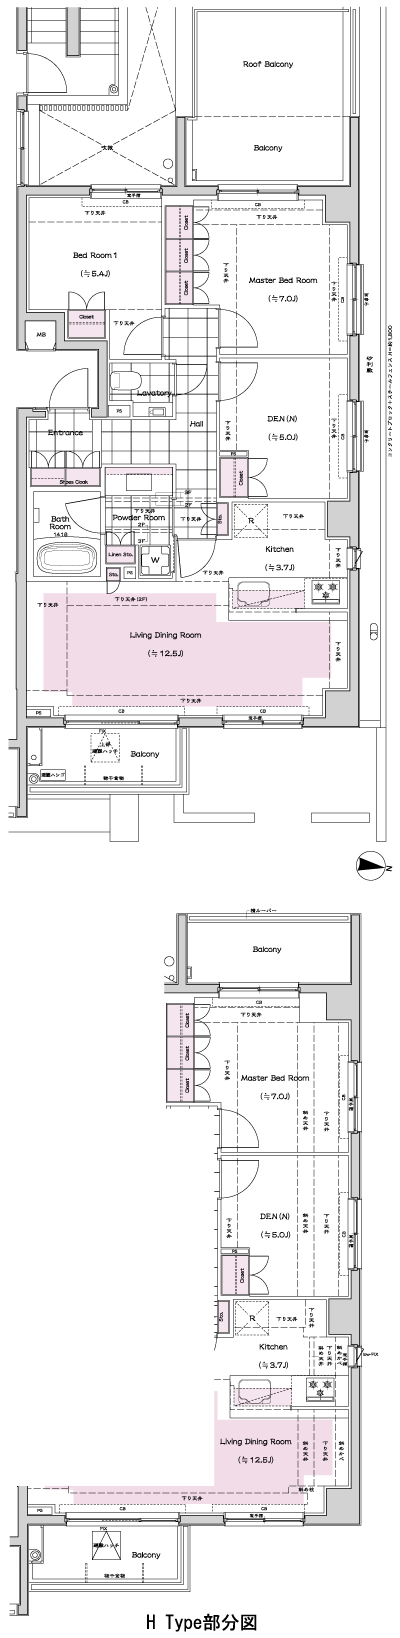 Floor: 2LDK + DEN (N), the occupied area: 75.45 sq m, Price: 82,900,000 yen, now on sale